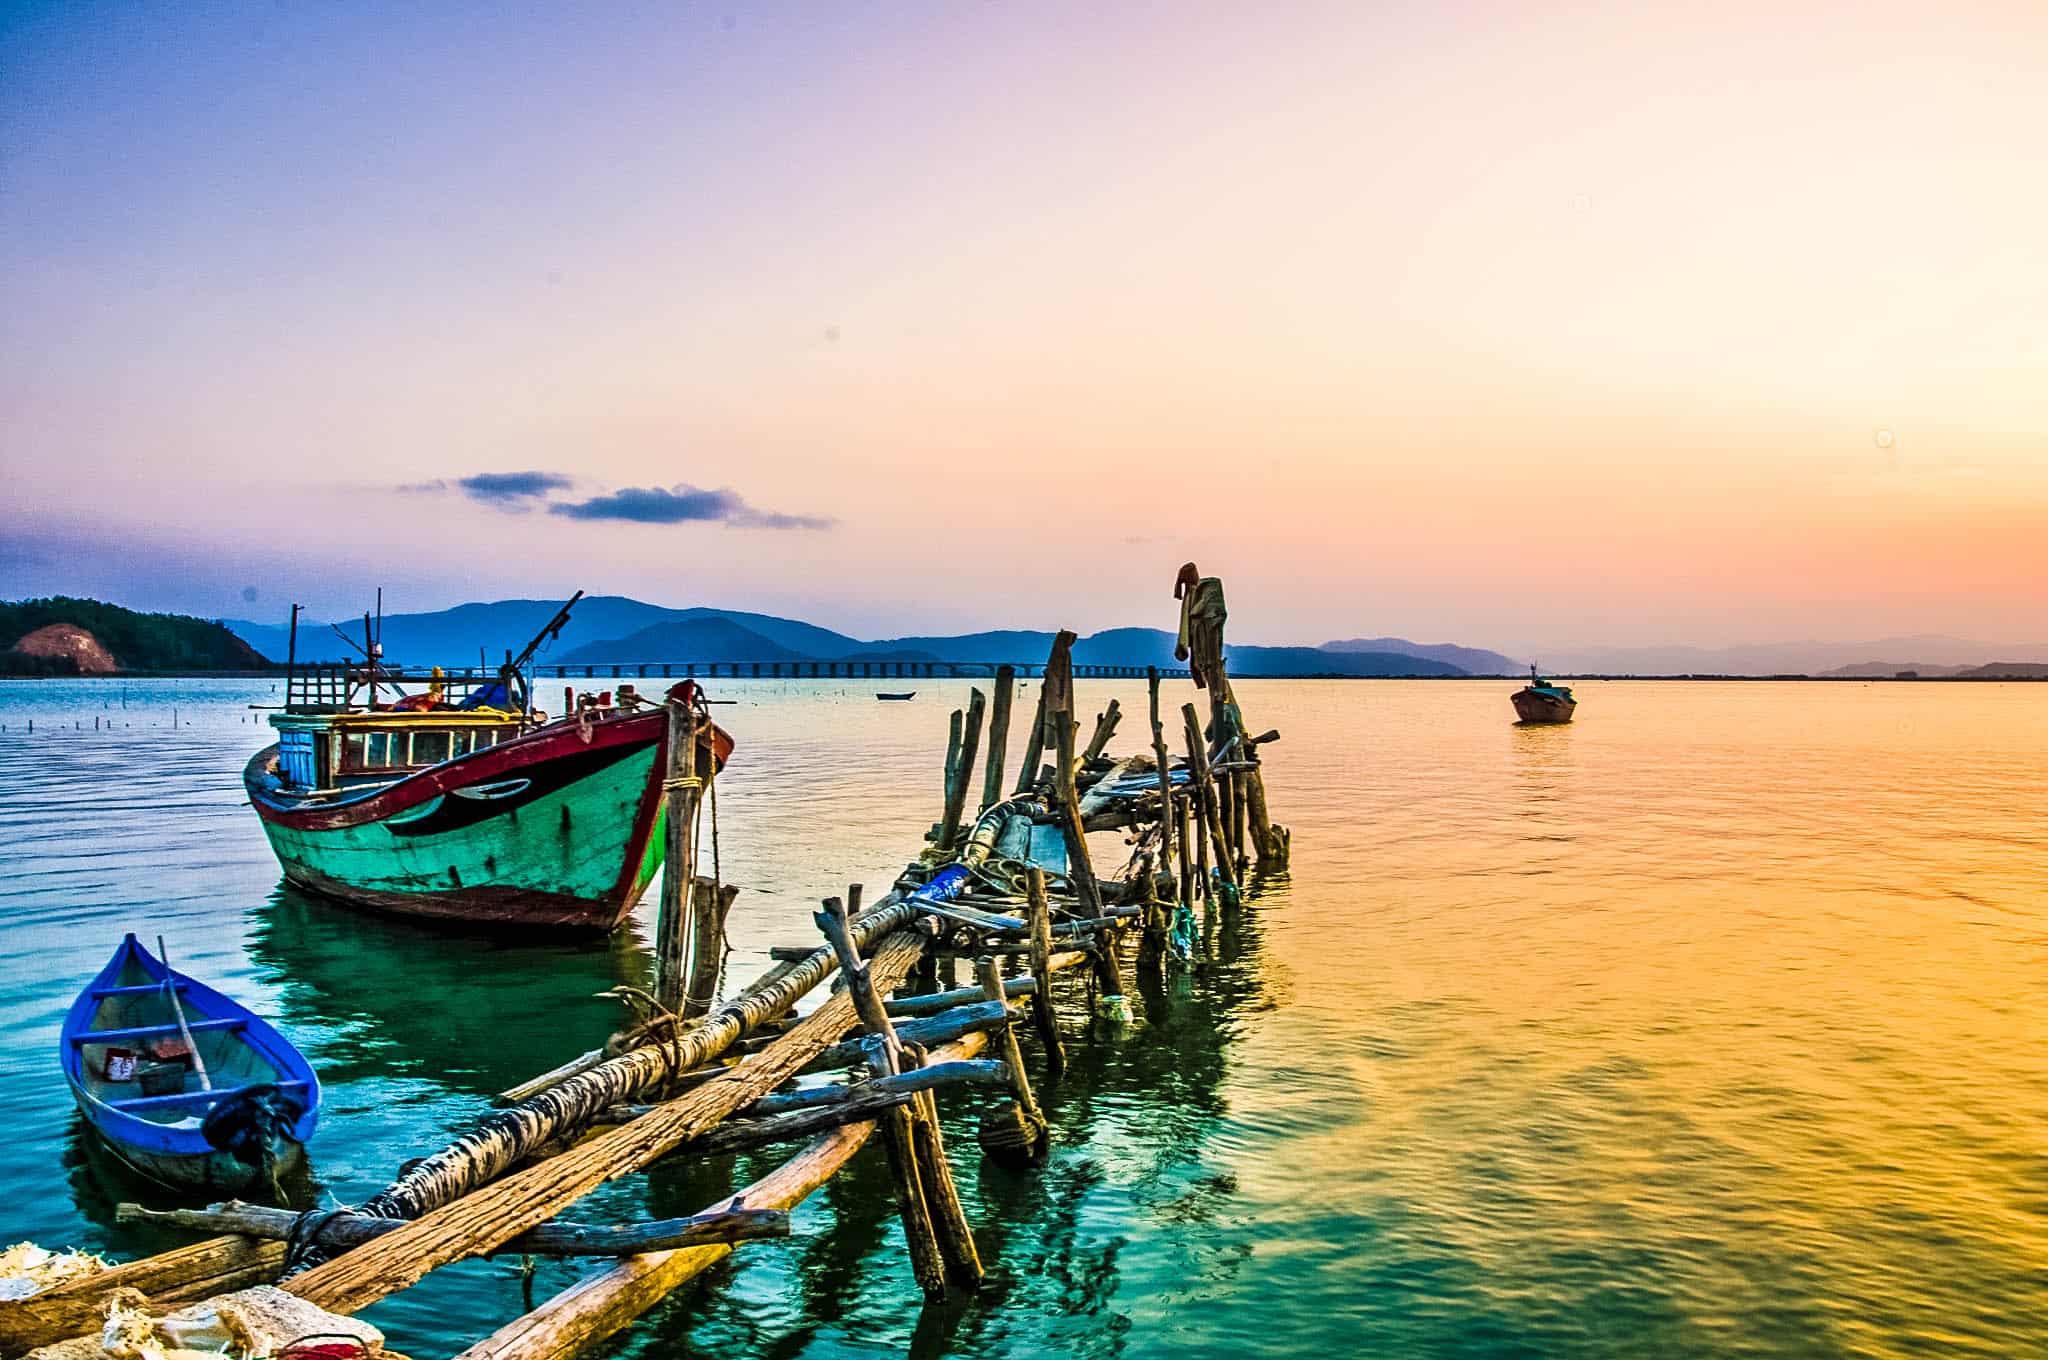 Bờ biển là một nét đẹp đặc trưng phổ biến của những khu du lịch nổi tiếng tại Quy Nhơn. (Ảnh ST)